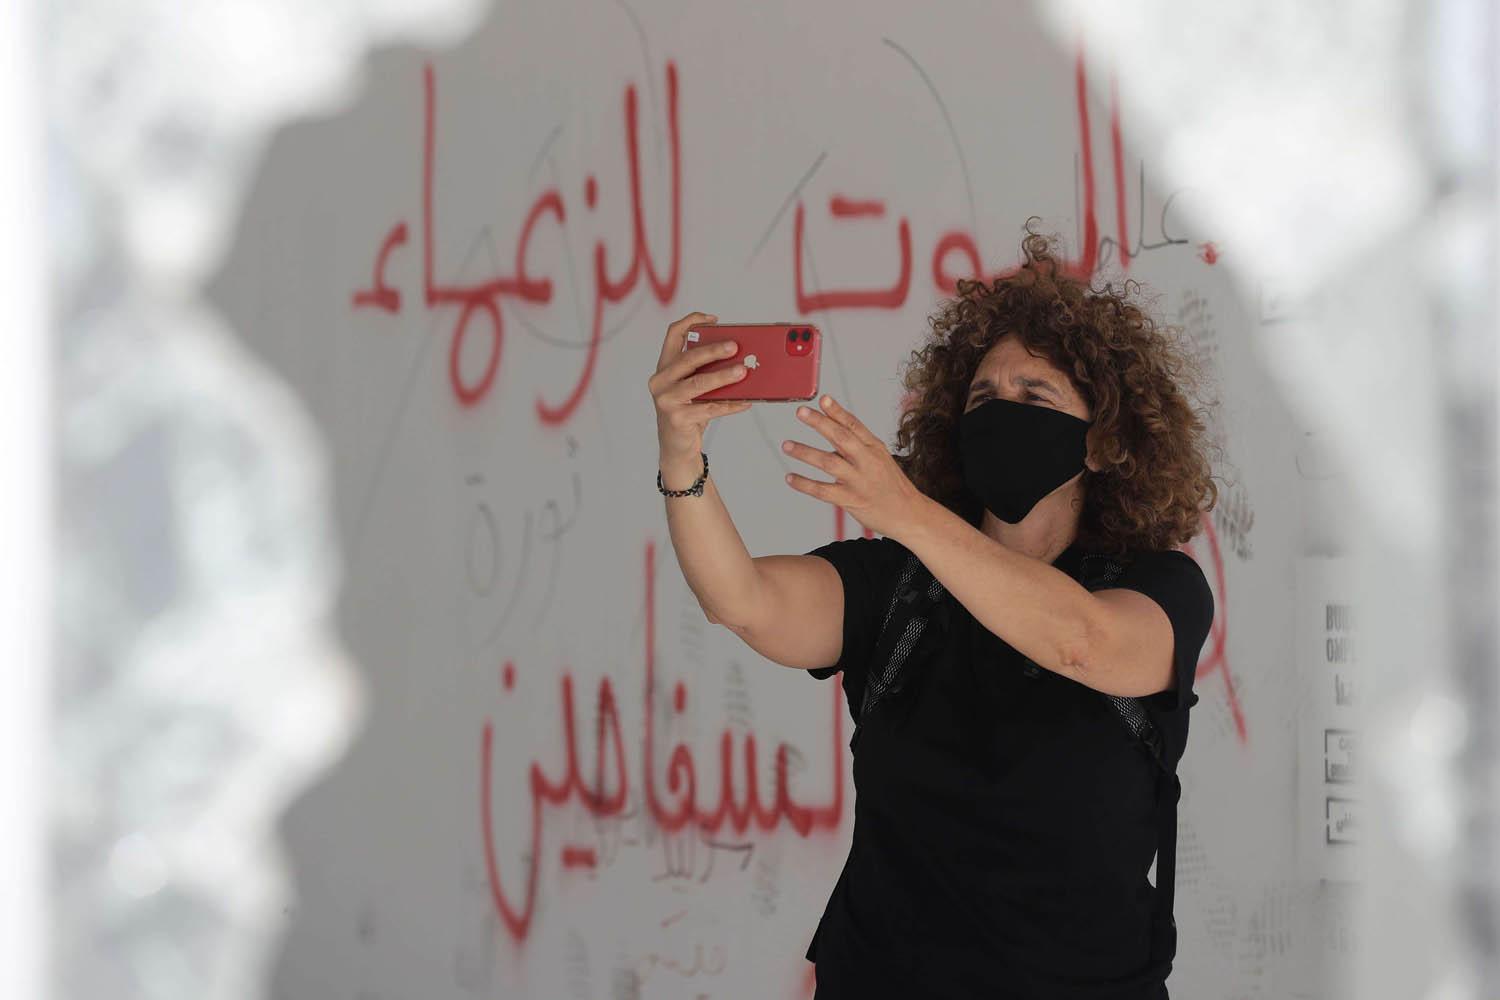 المخرجة اللبنانية كارول منصور في سيلفي مع شعارات على الحائط في بيروت